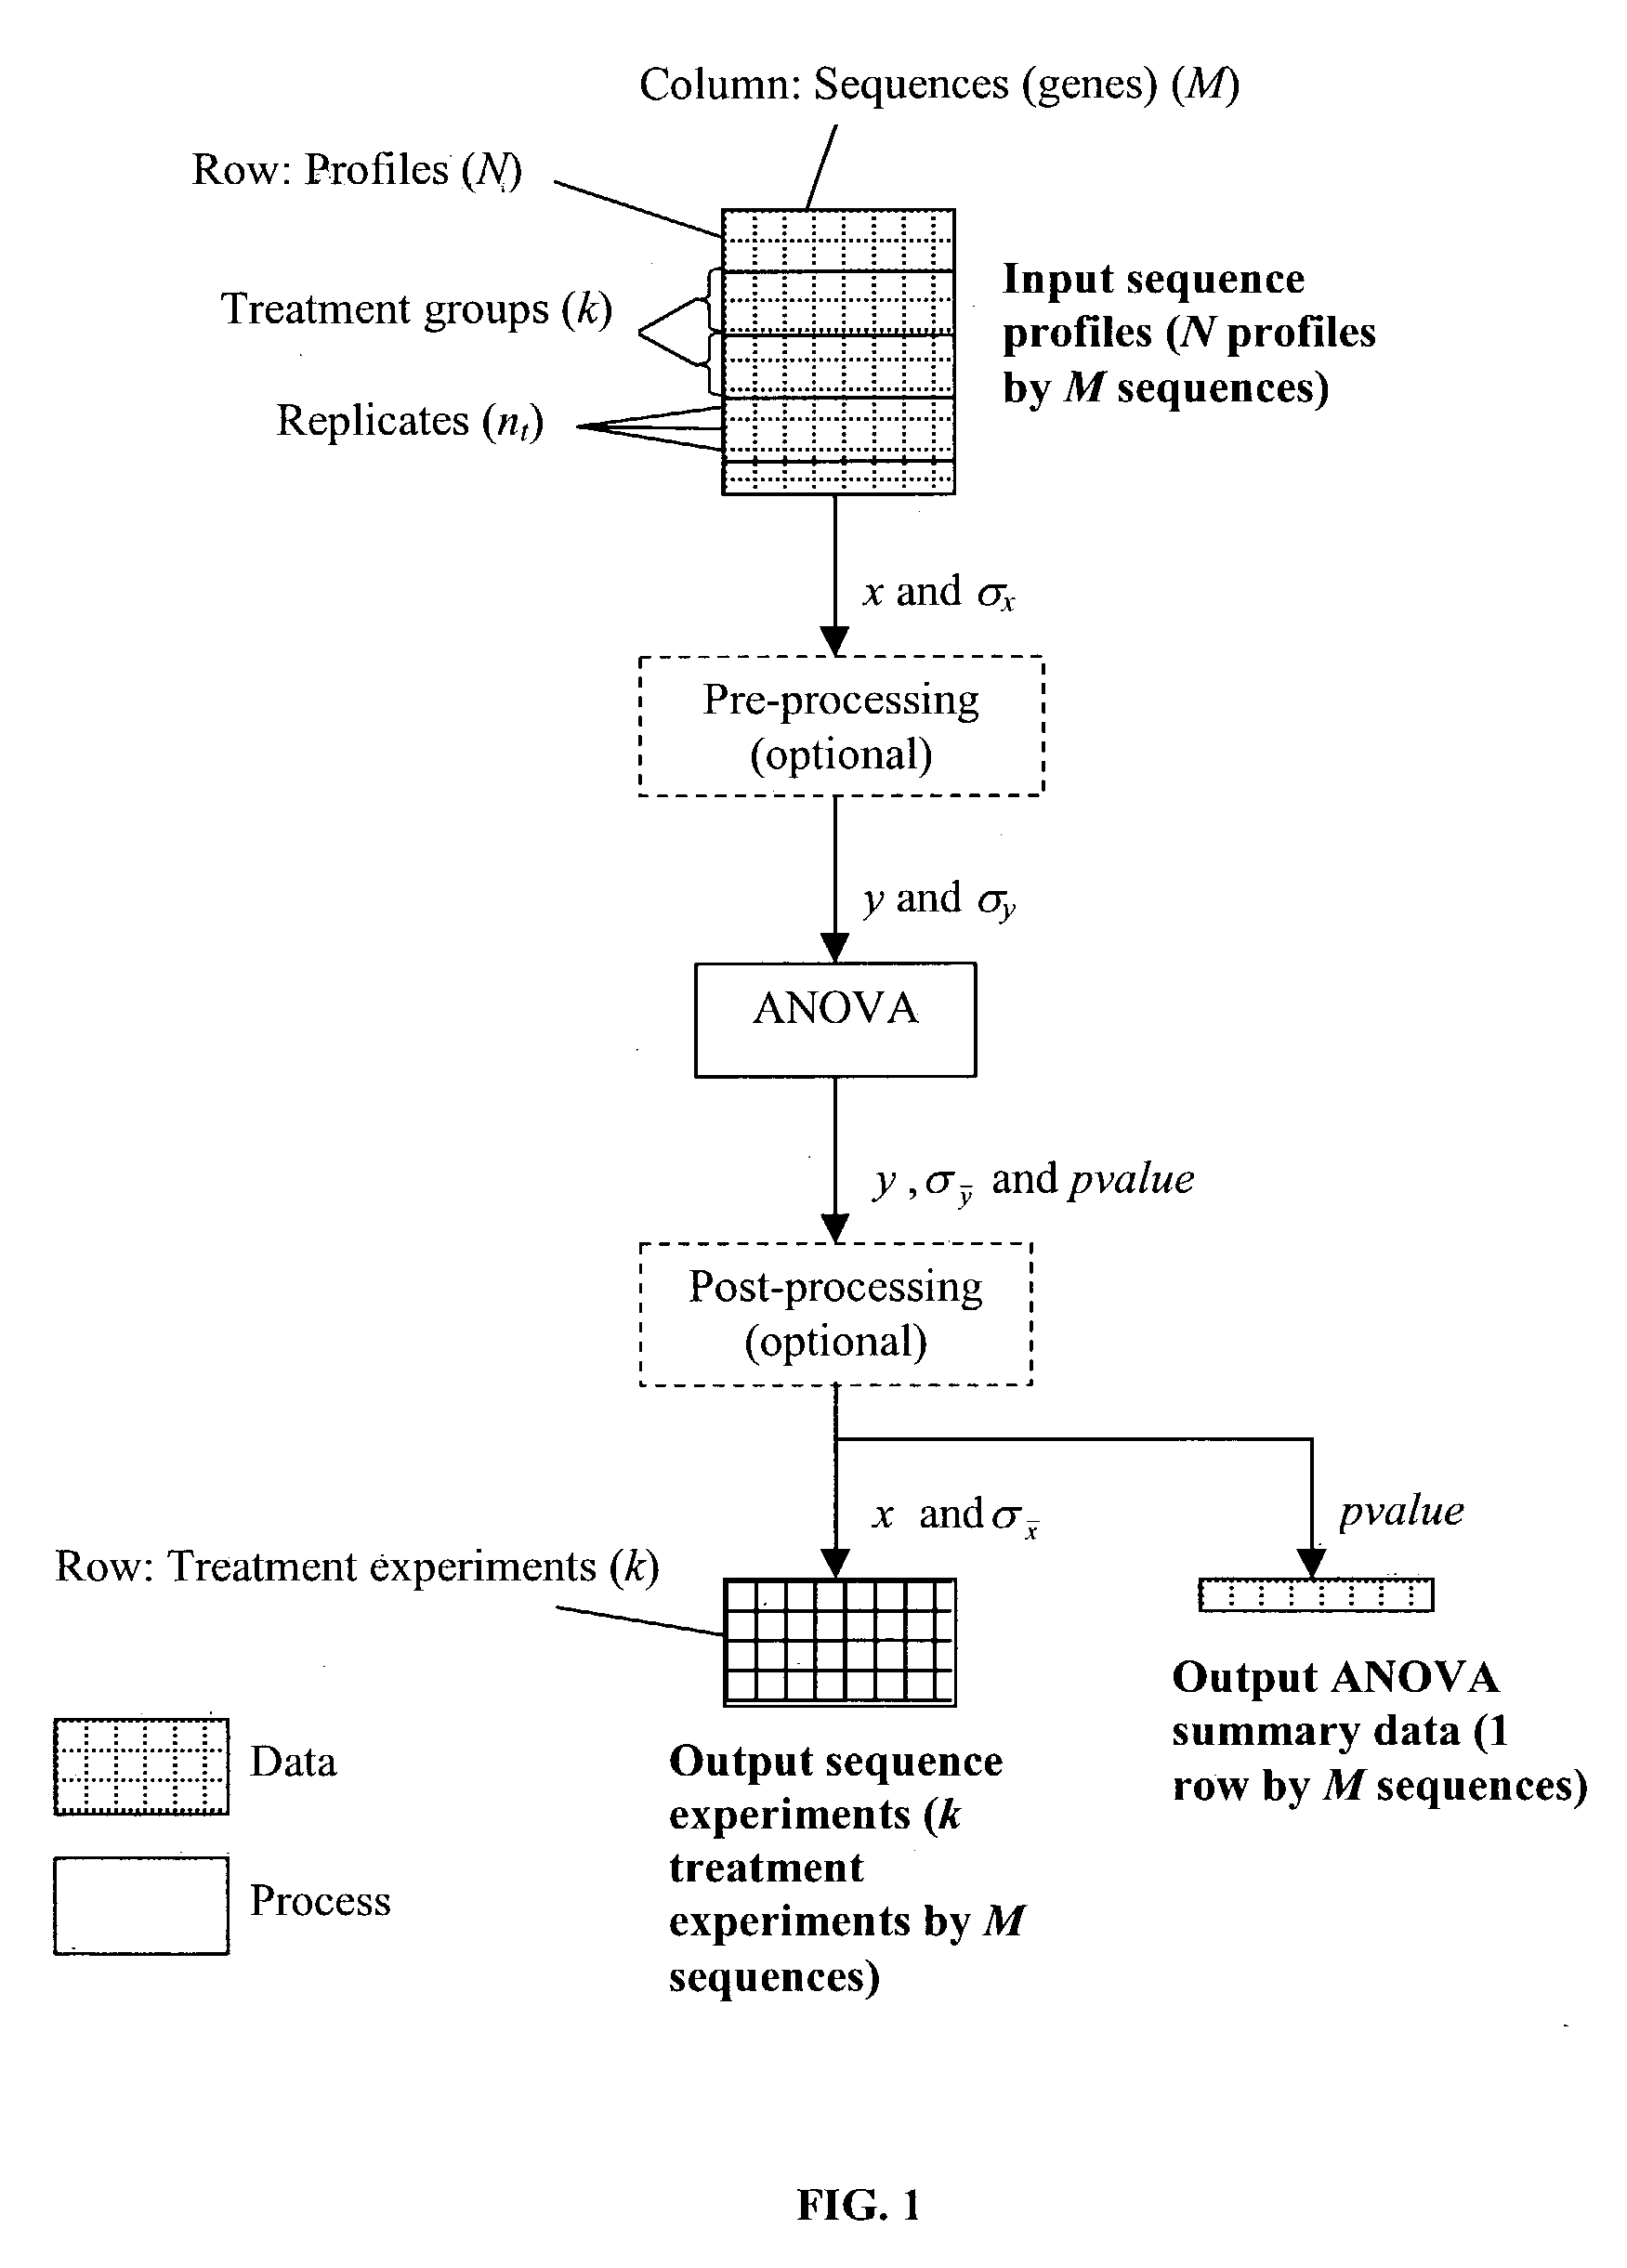 ANOVA method for data analysis